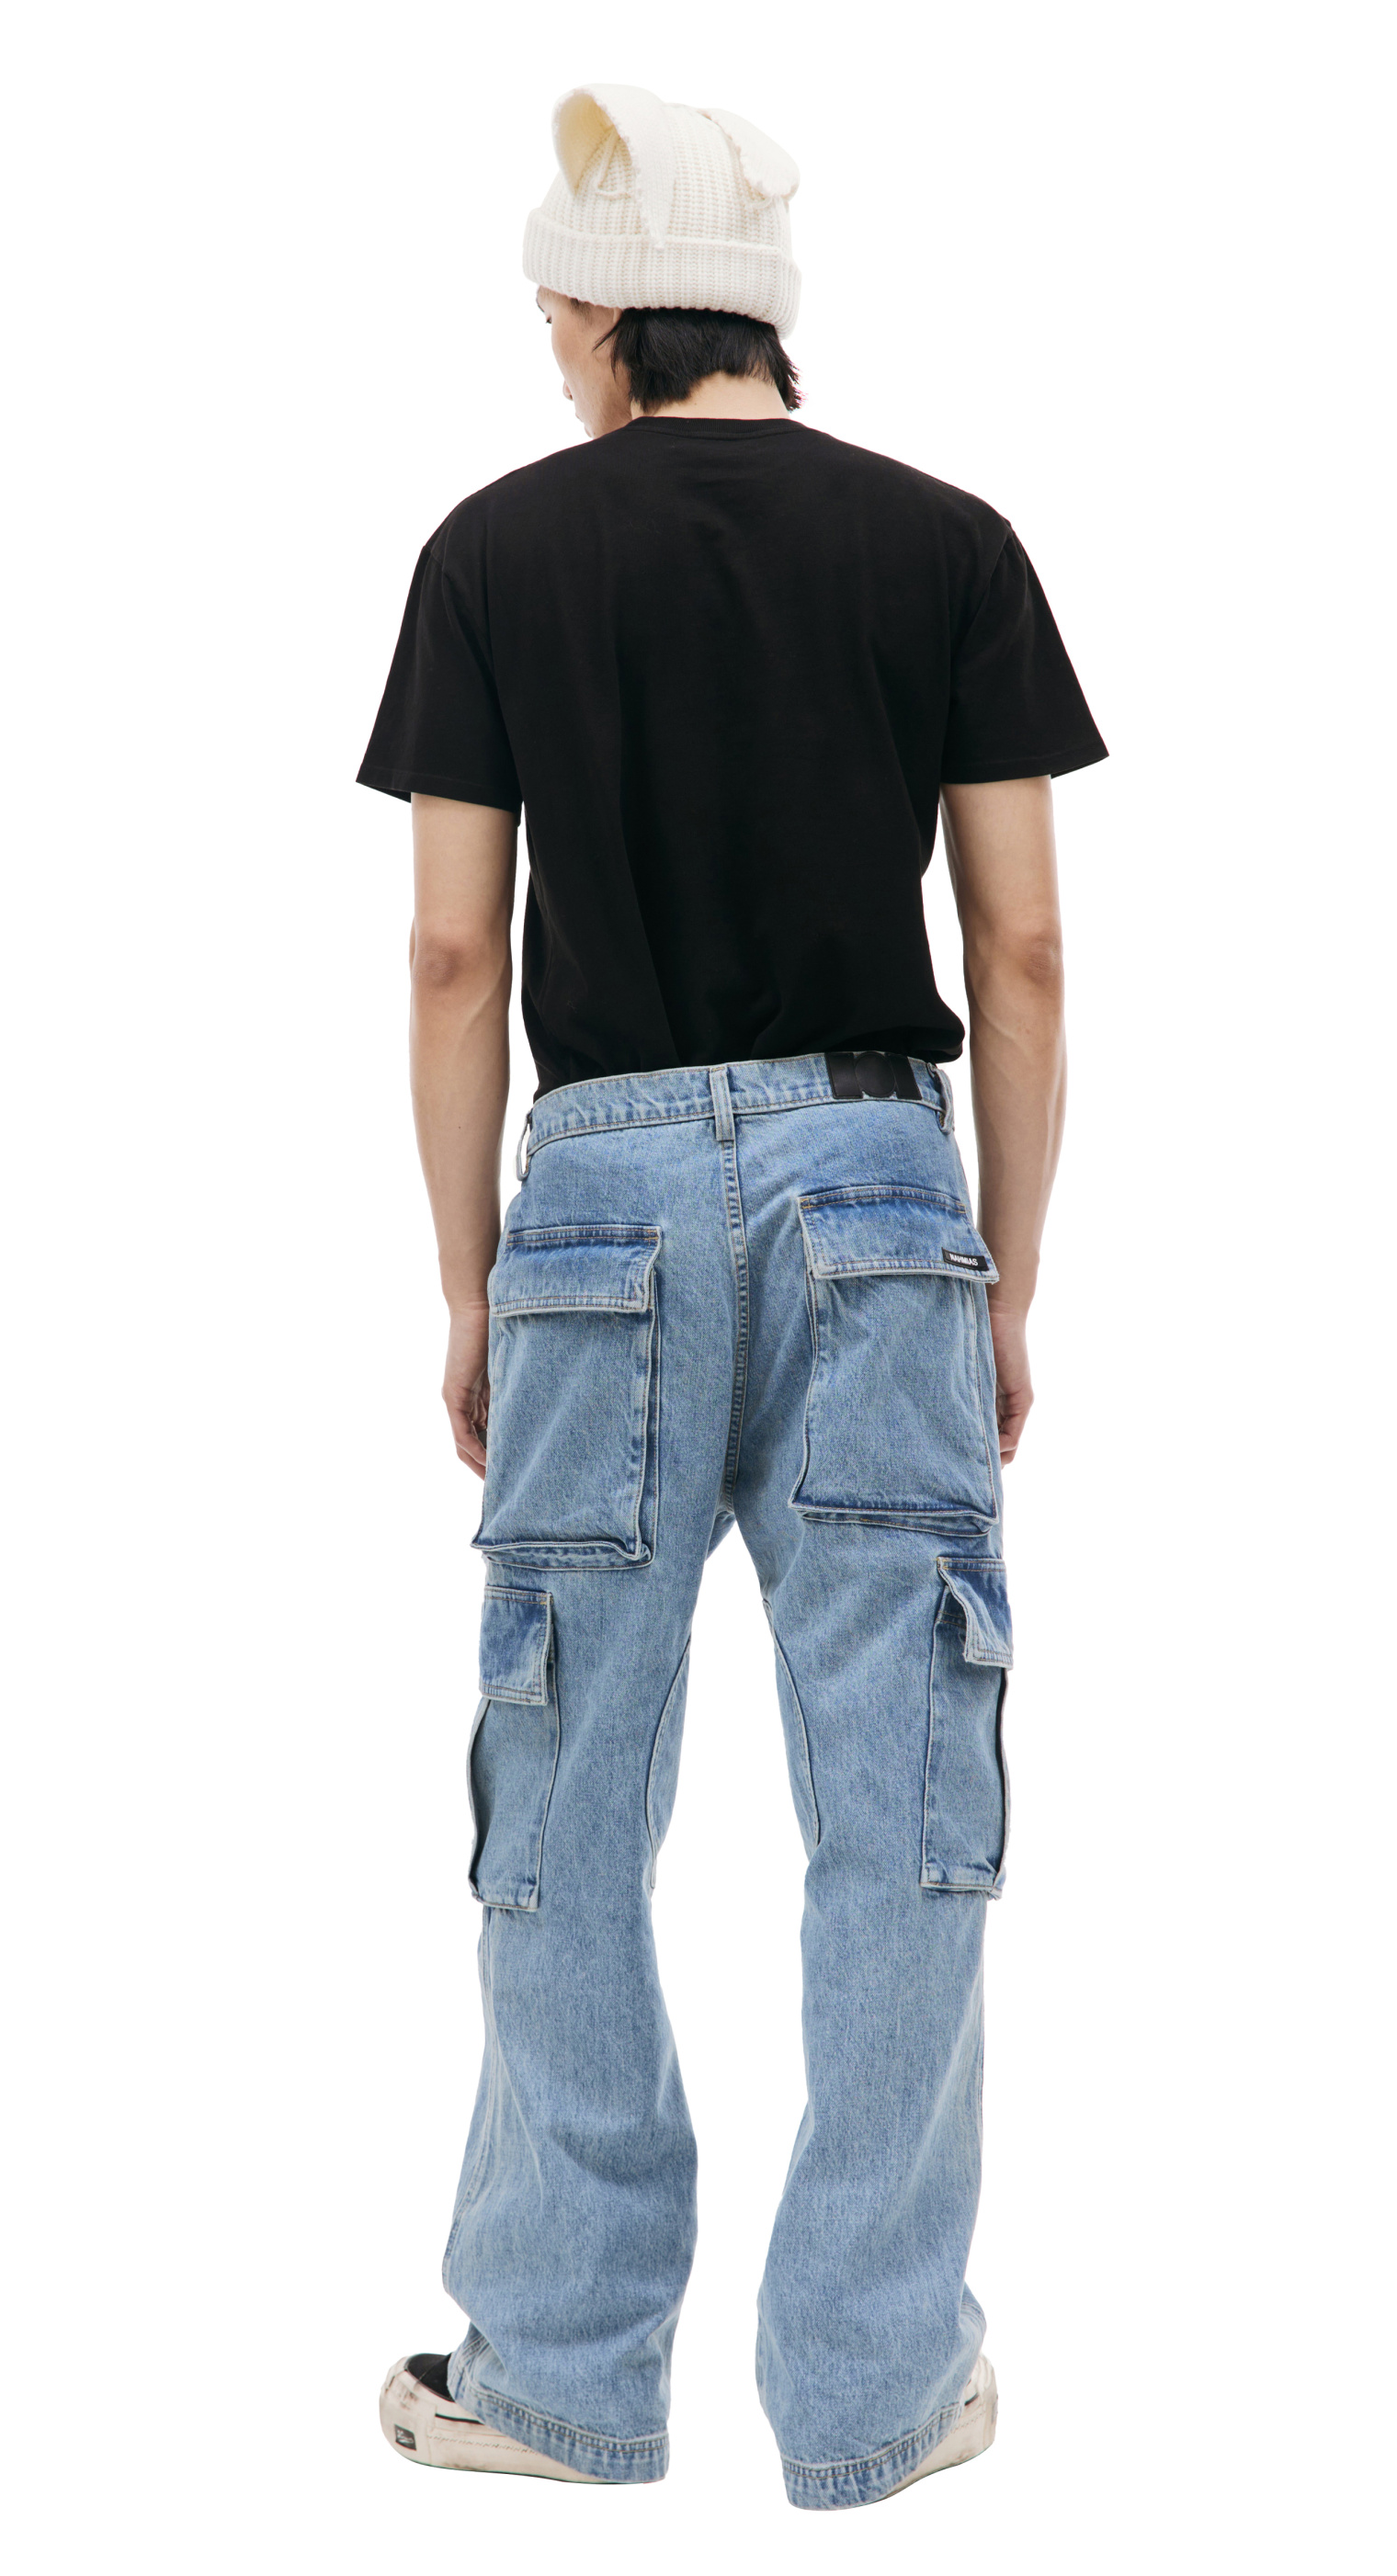 Nahmias Mid-rise cargo jeans